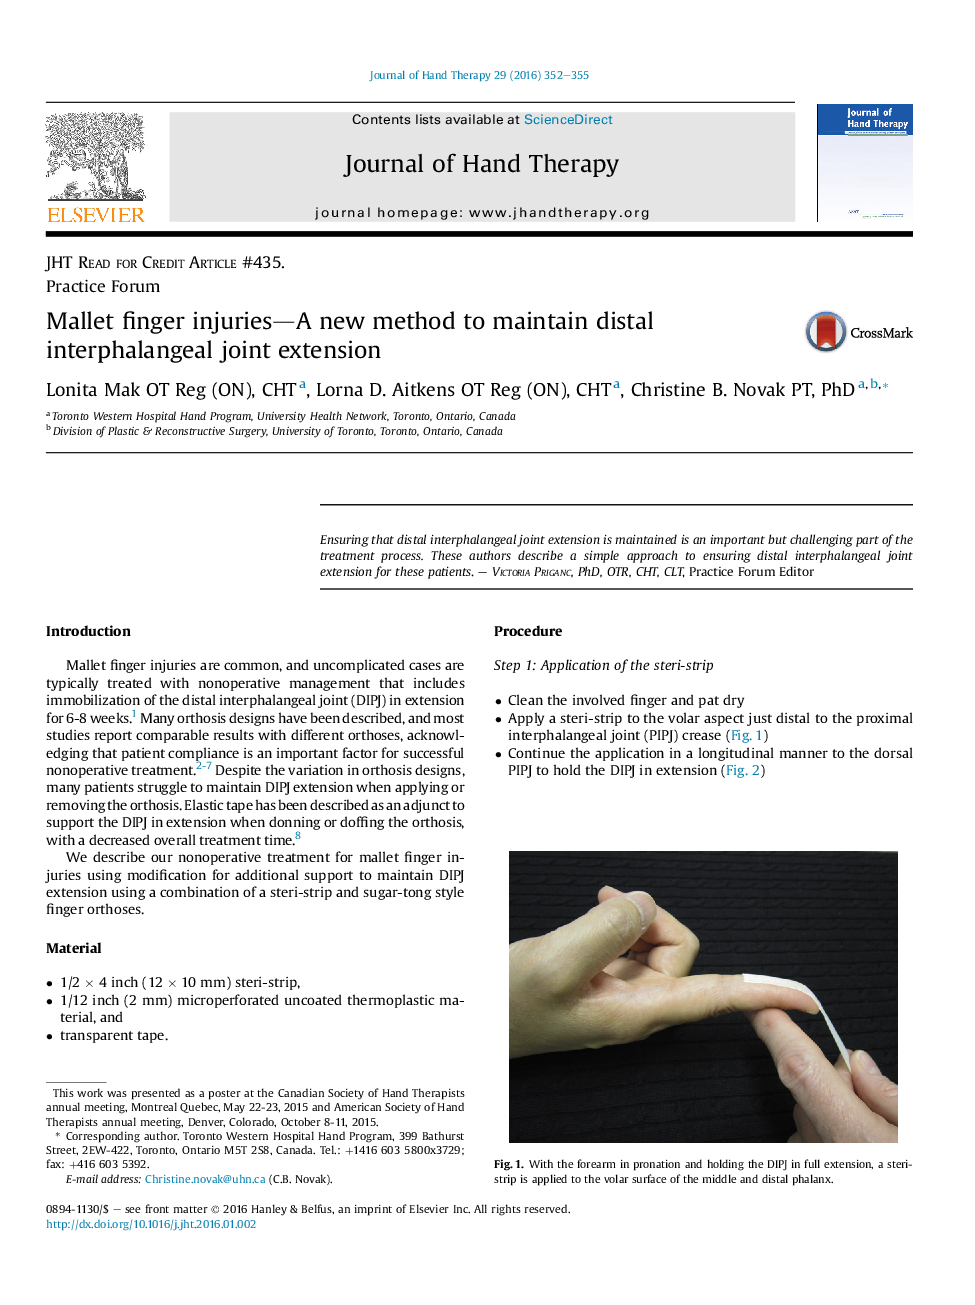 آسیب های انگشت چکشی: یک روش جدید برای حفظ اکستنشن مشترک اینترفاالنژیال دیستال